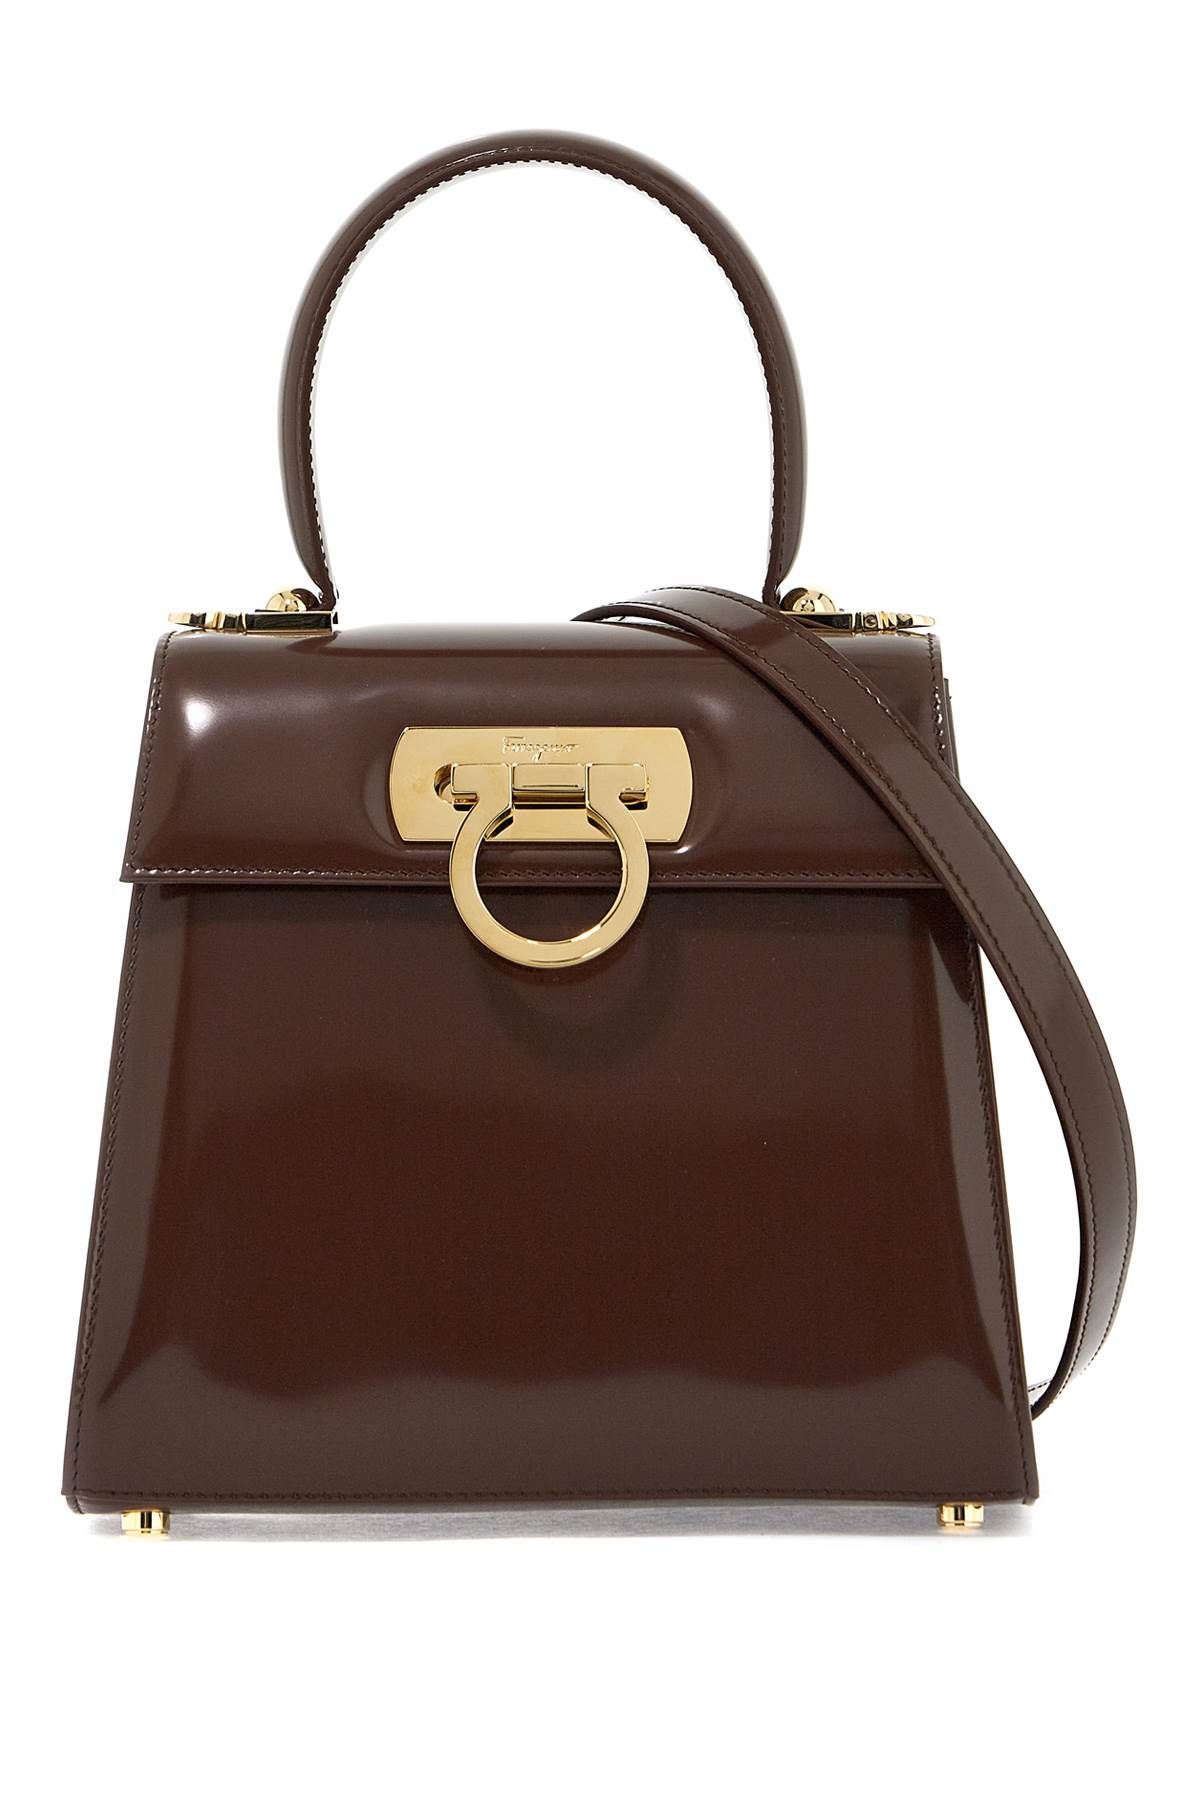 Ferragamo FERRAGAMO iconic top handle handbag (s)